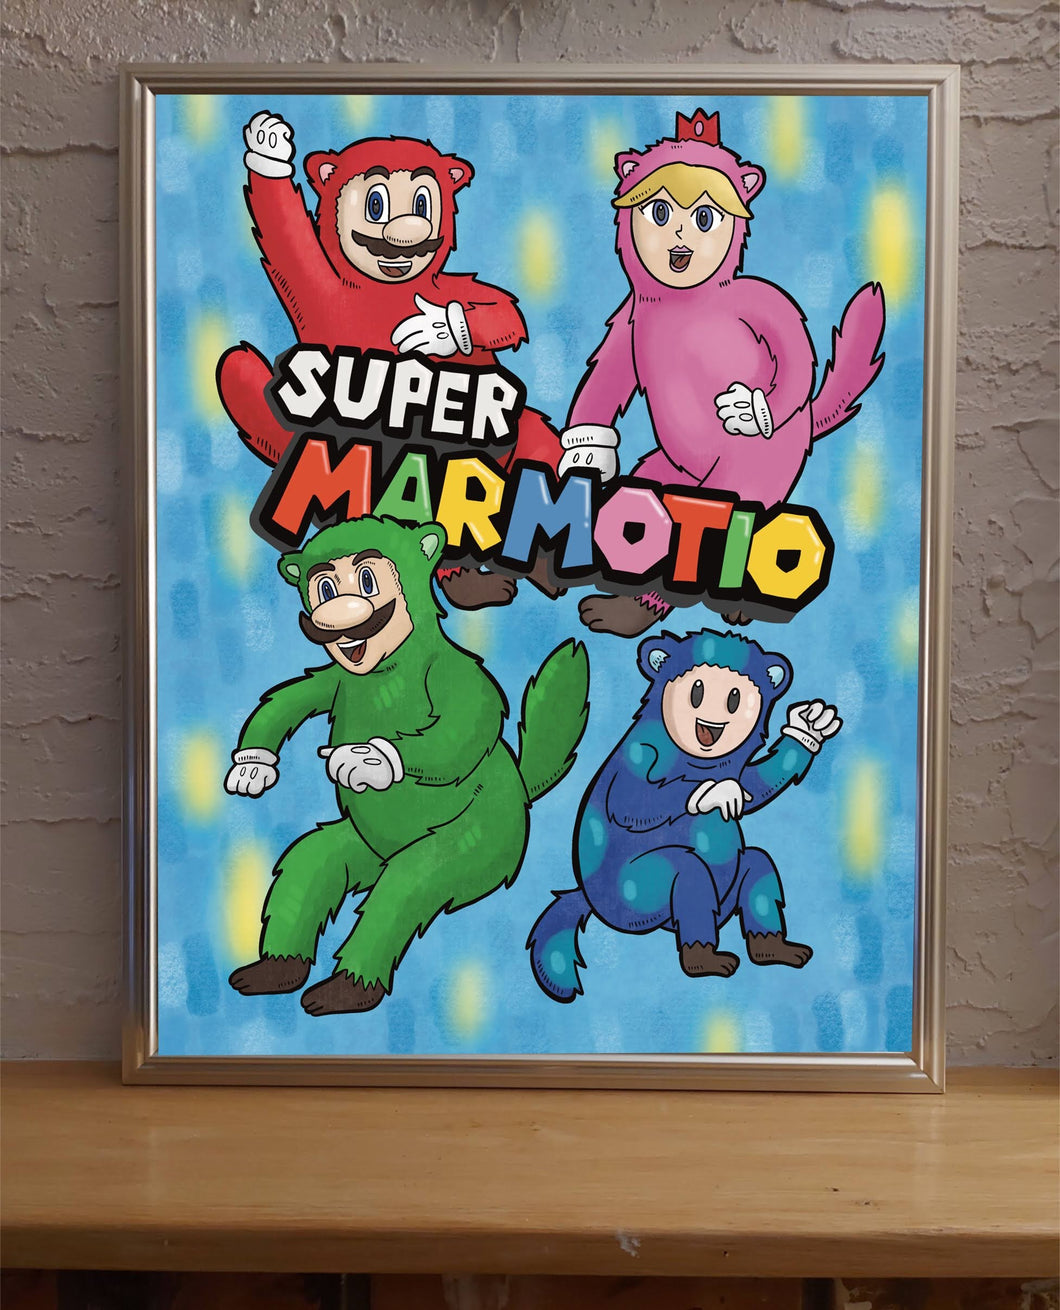 Super Marmotio (Super Mario Bros Parody)